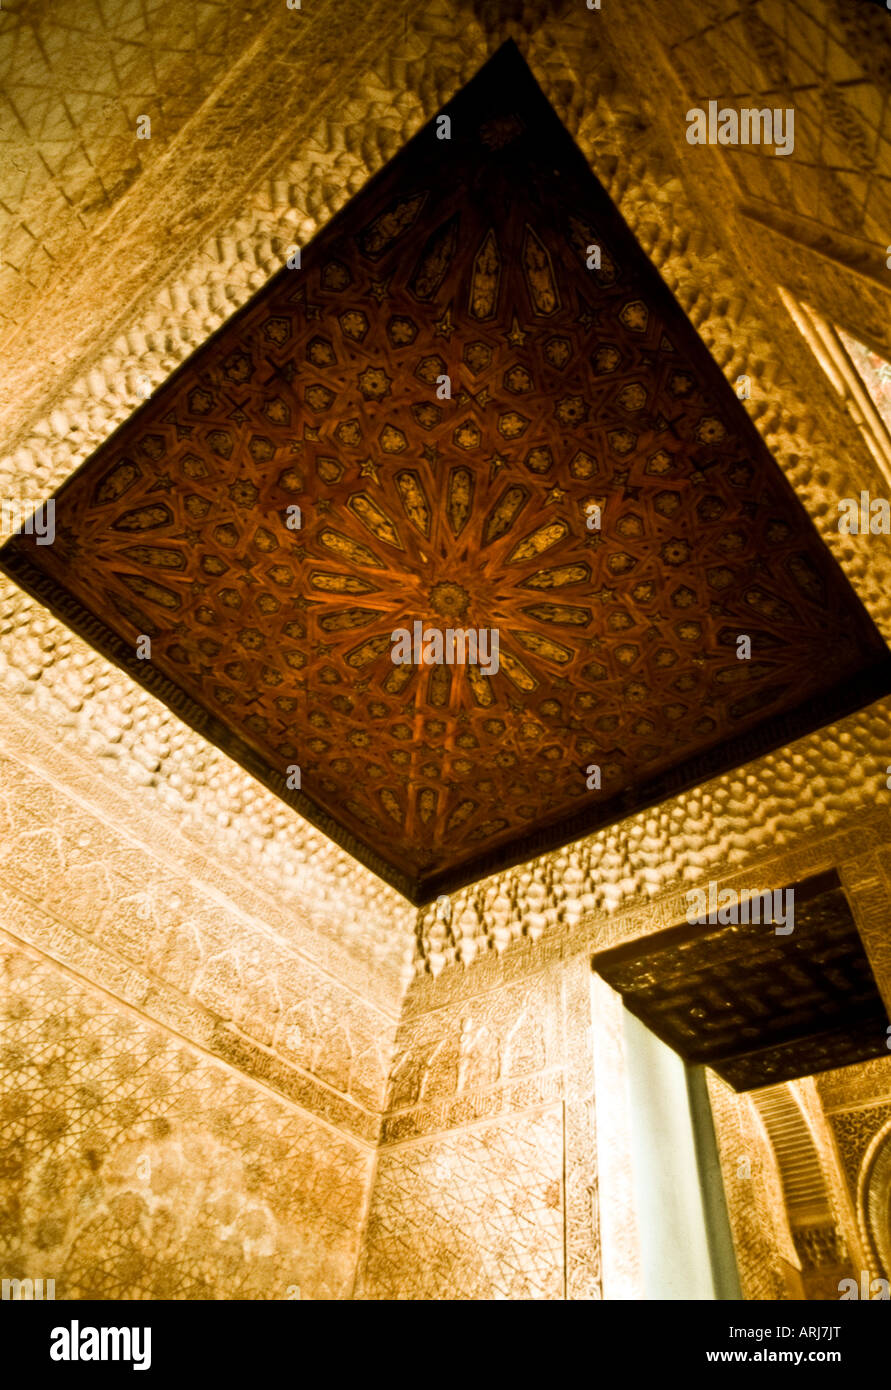 Panneaux de mosaïque en plafond de la Alhambra, Grenade Espagne Banque D'Images